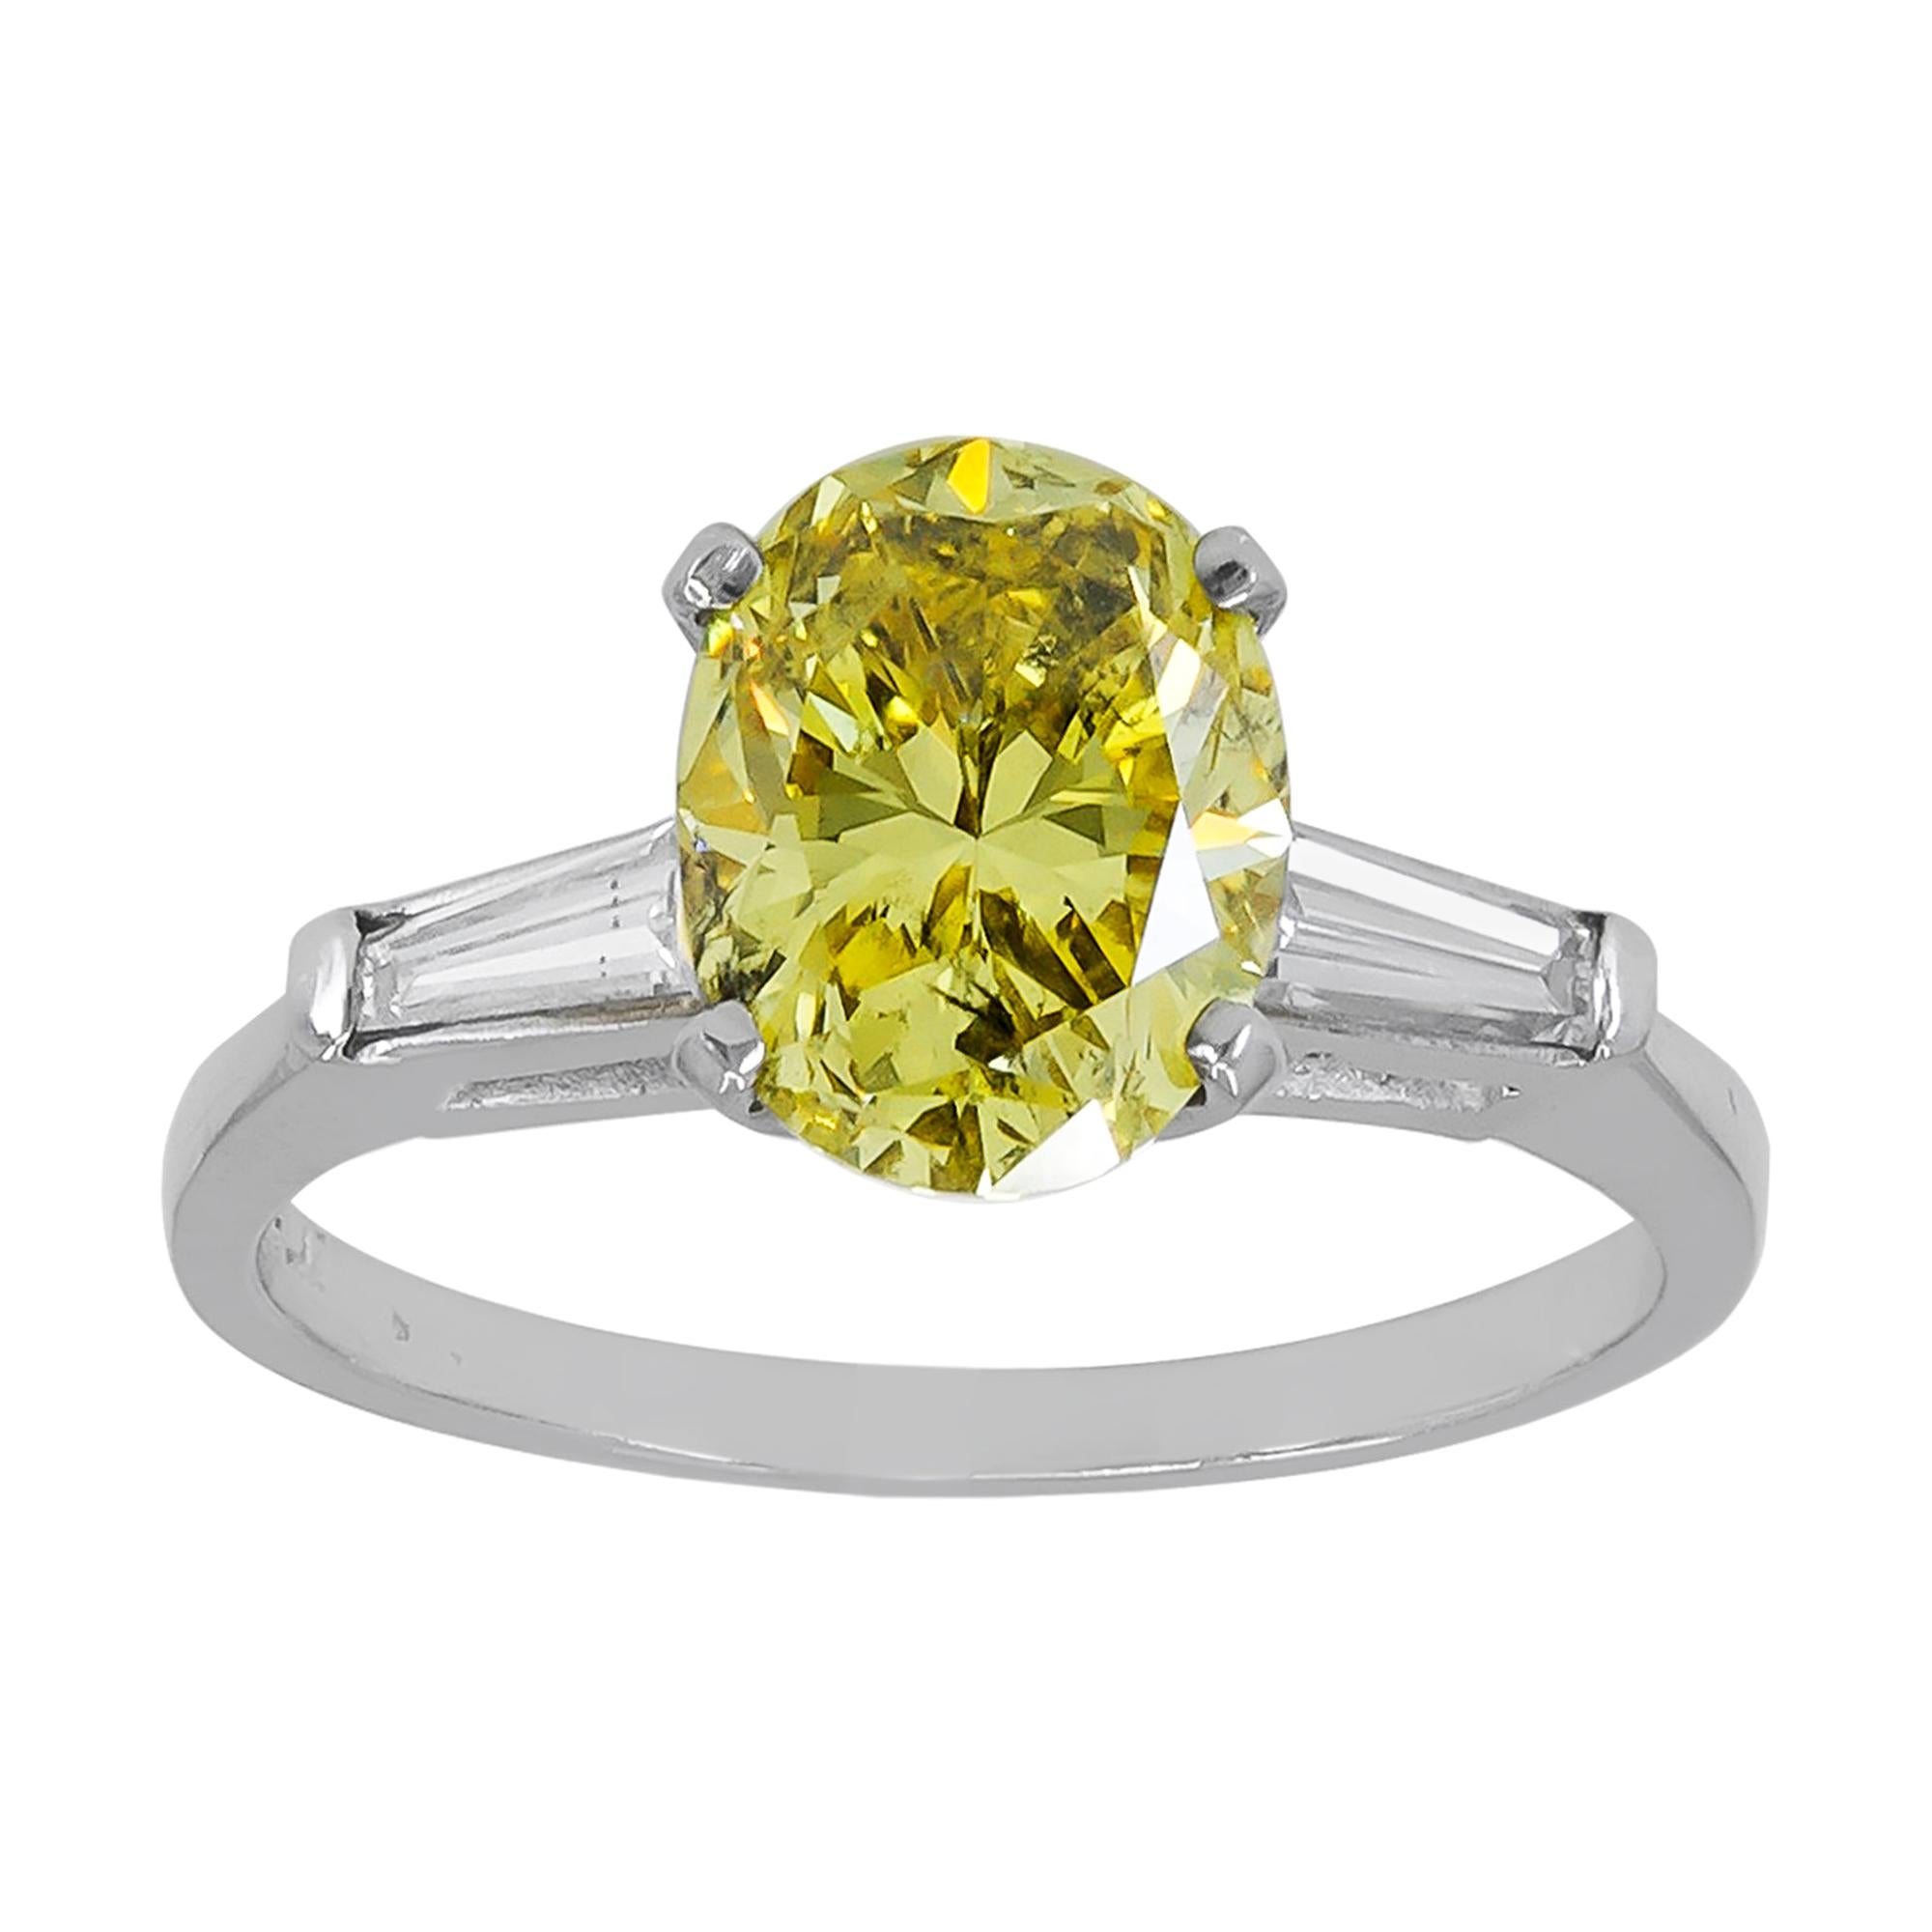 Spectra Fine Jewelry, bague en diamant jaune vif fantaisie de 2,14 carats certifié GIA